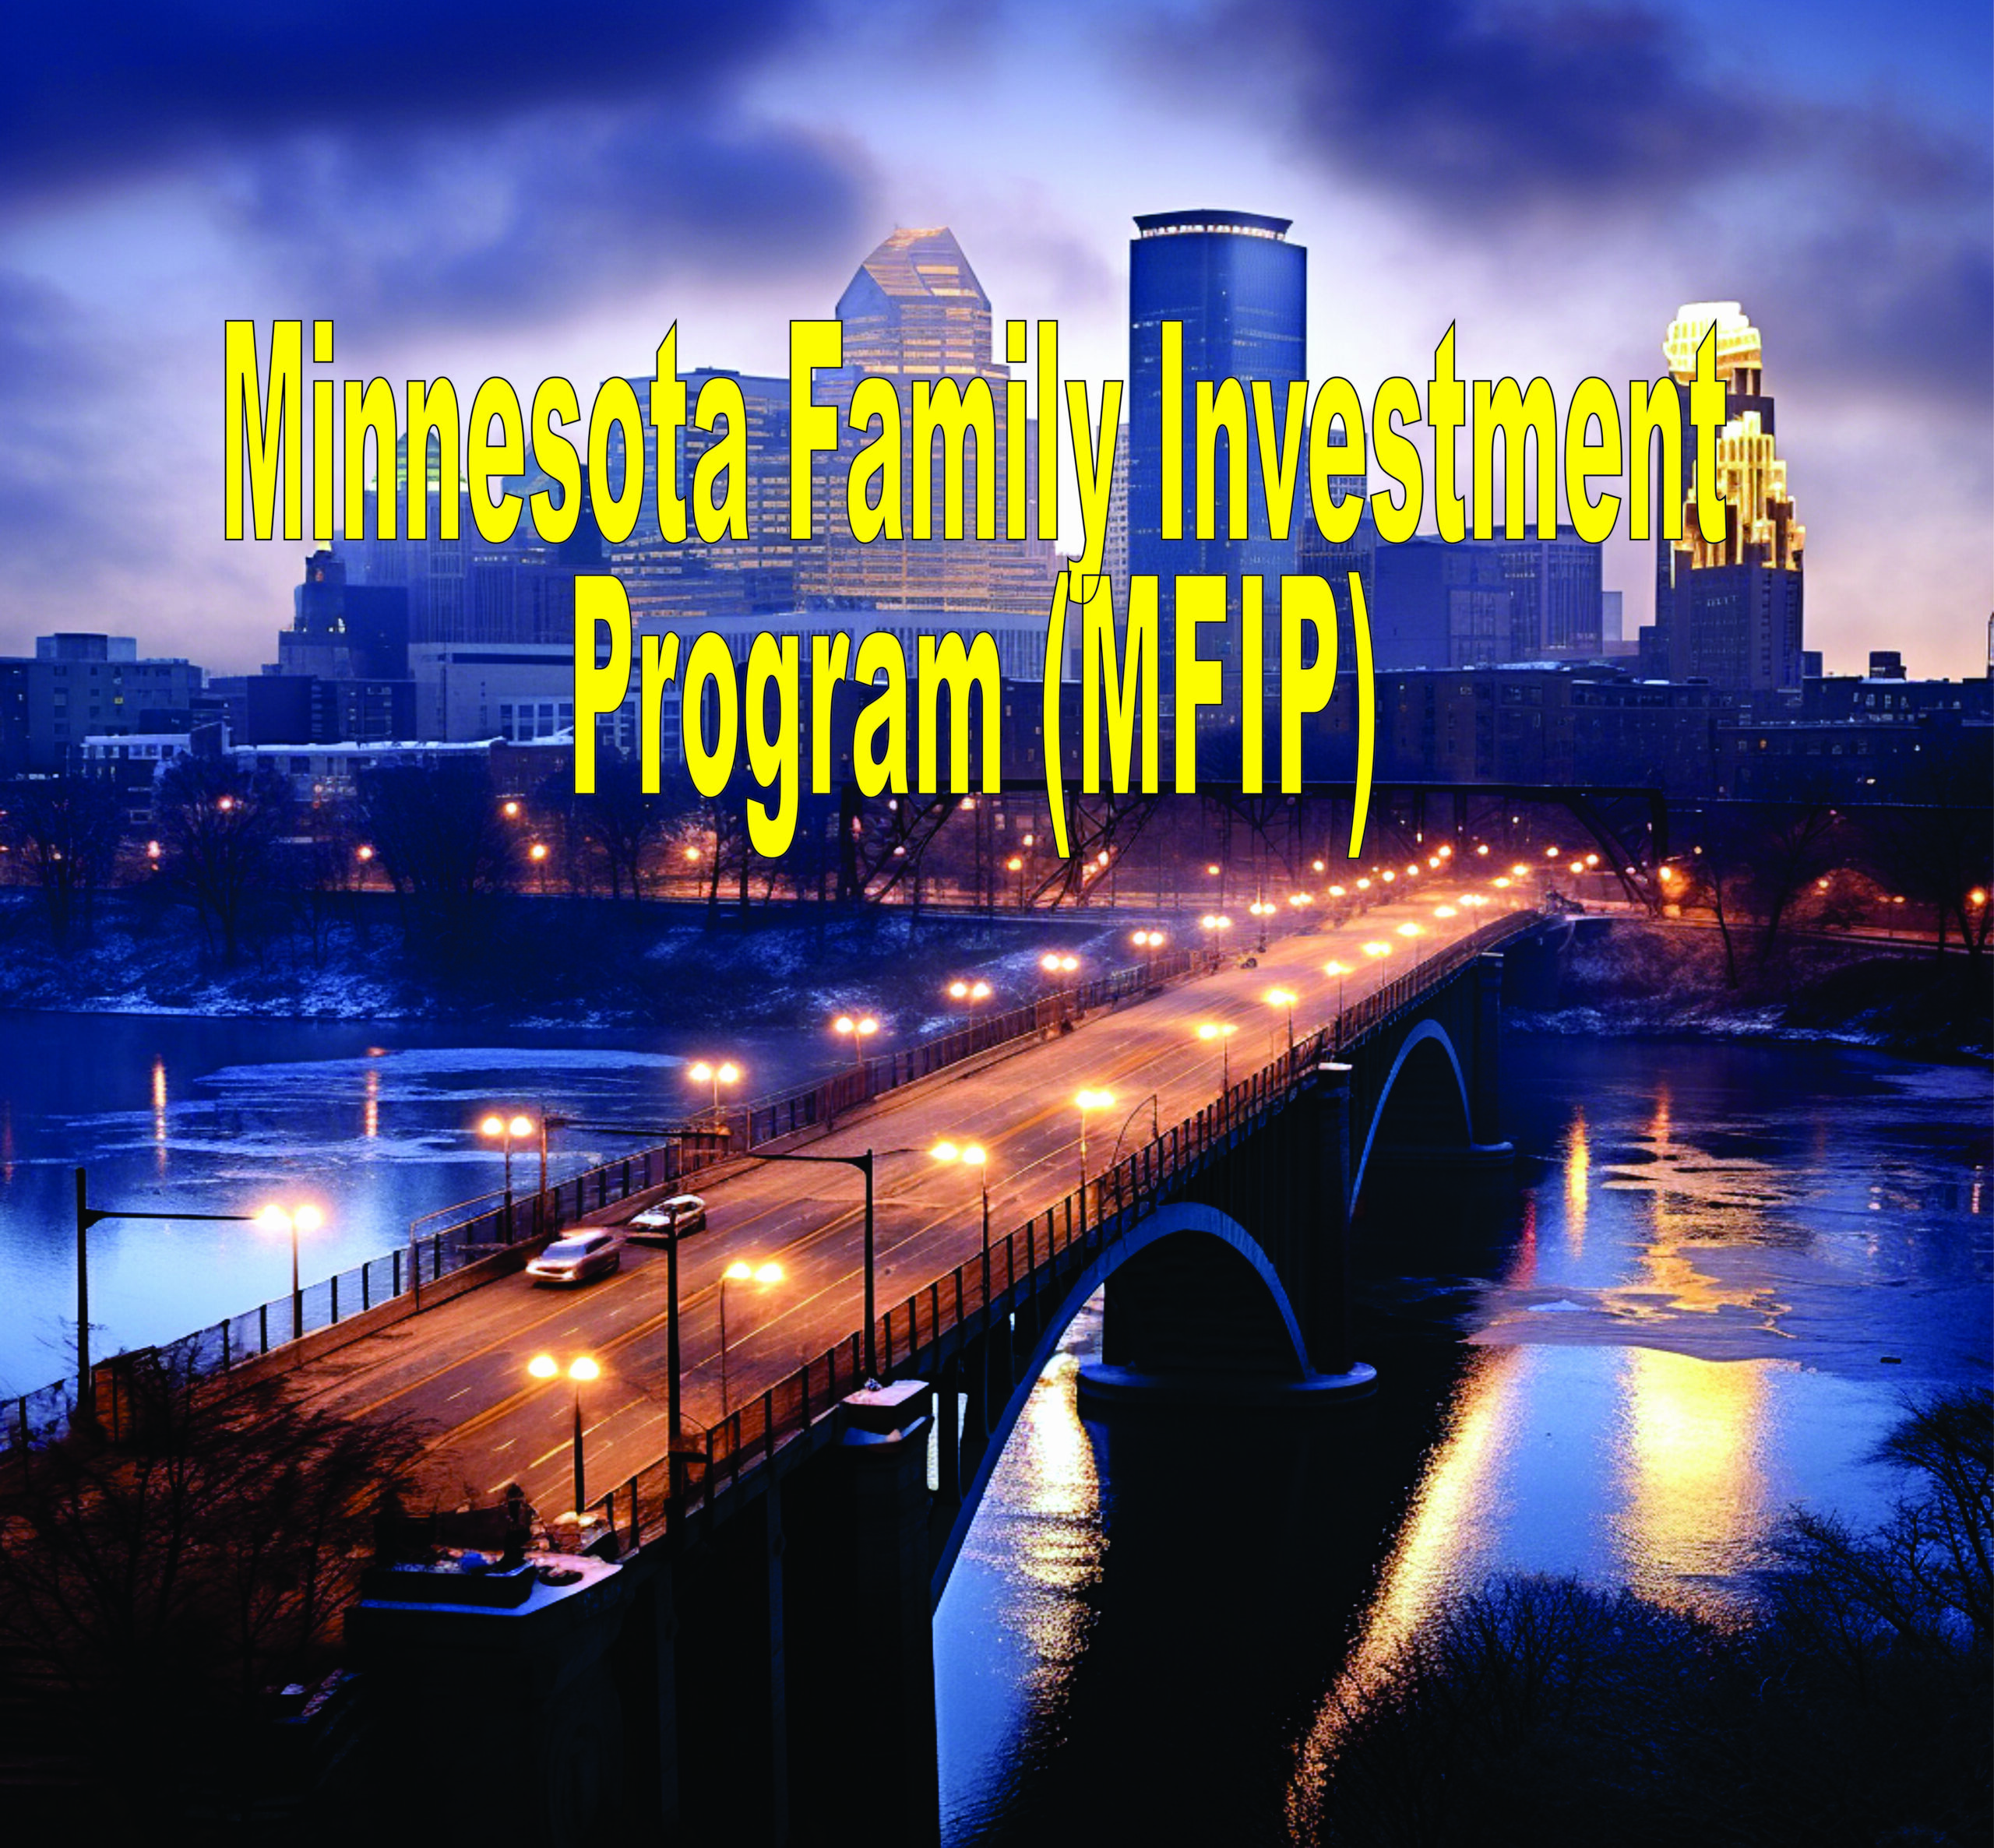 Minnesota Family Investment Program (mfip)